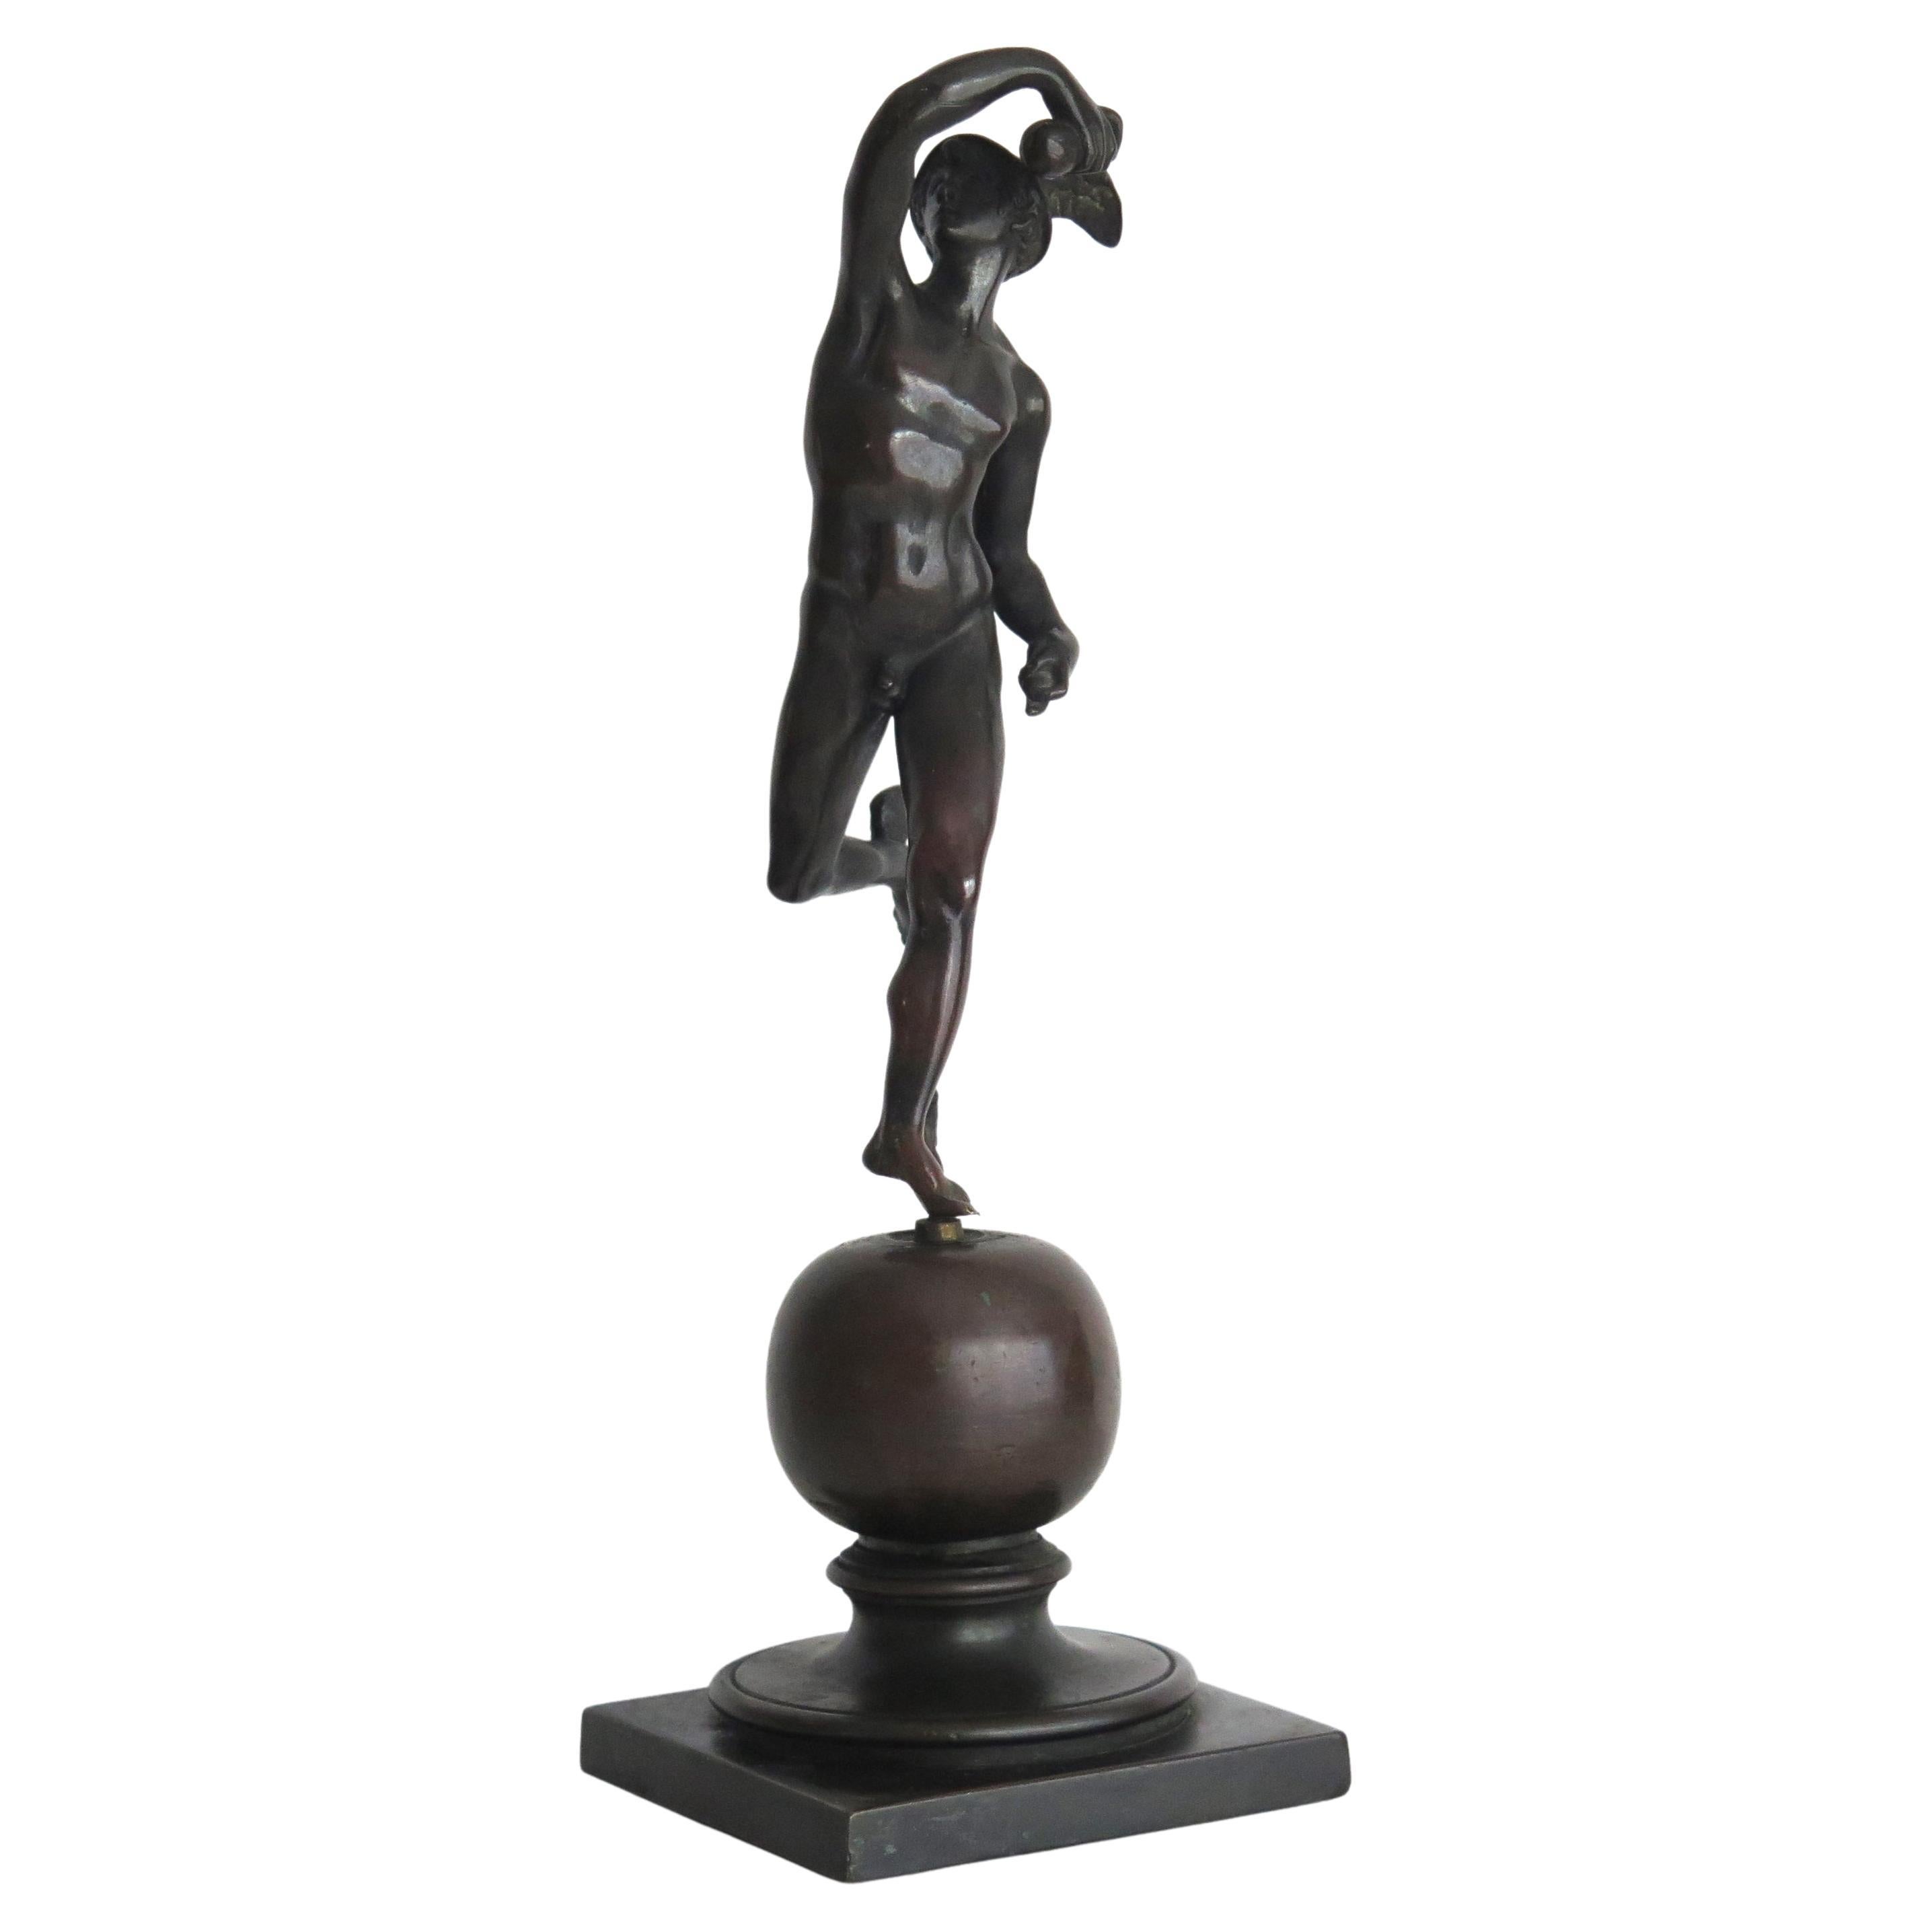 Figurine en bronze du XIXe siècle représentant Hermès ou Mercure, probablement française